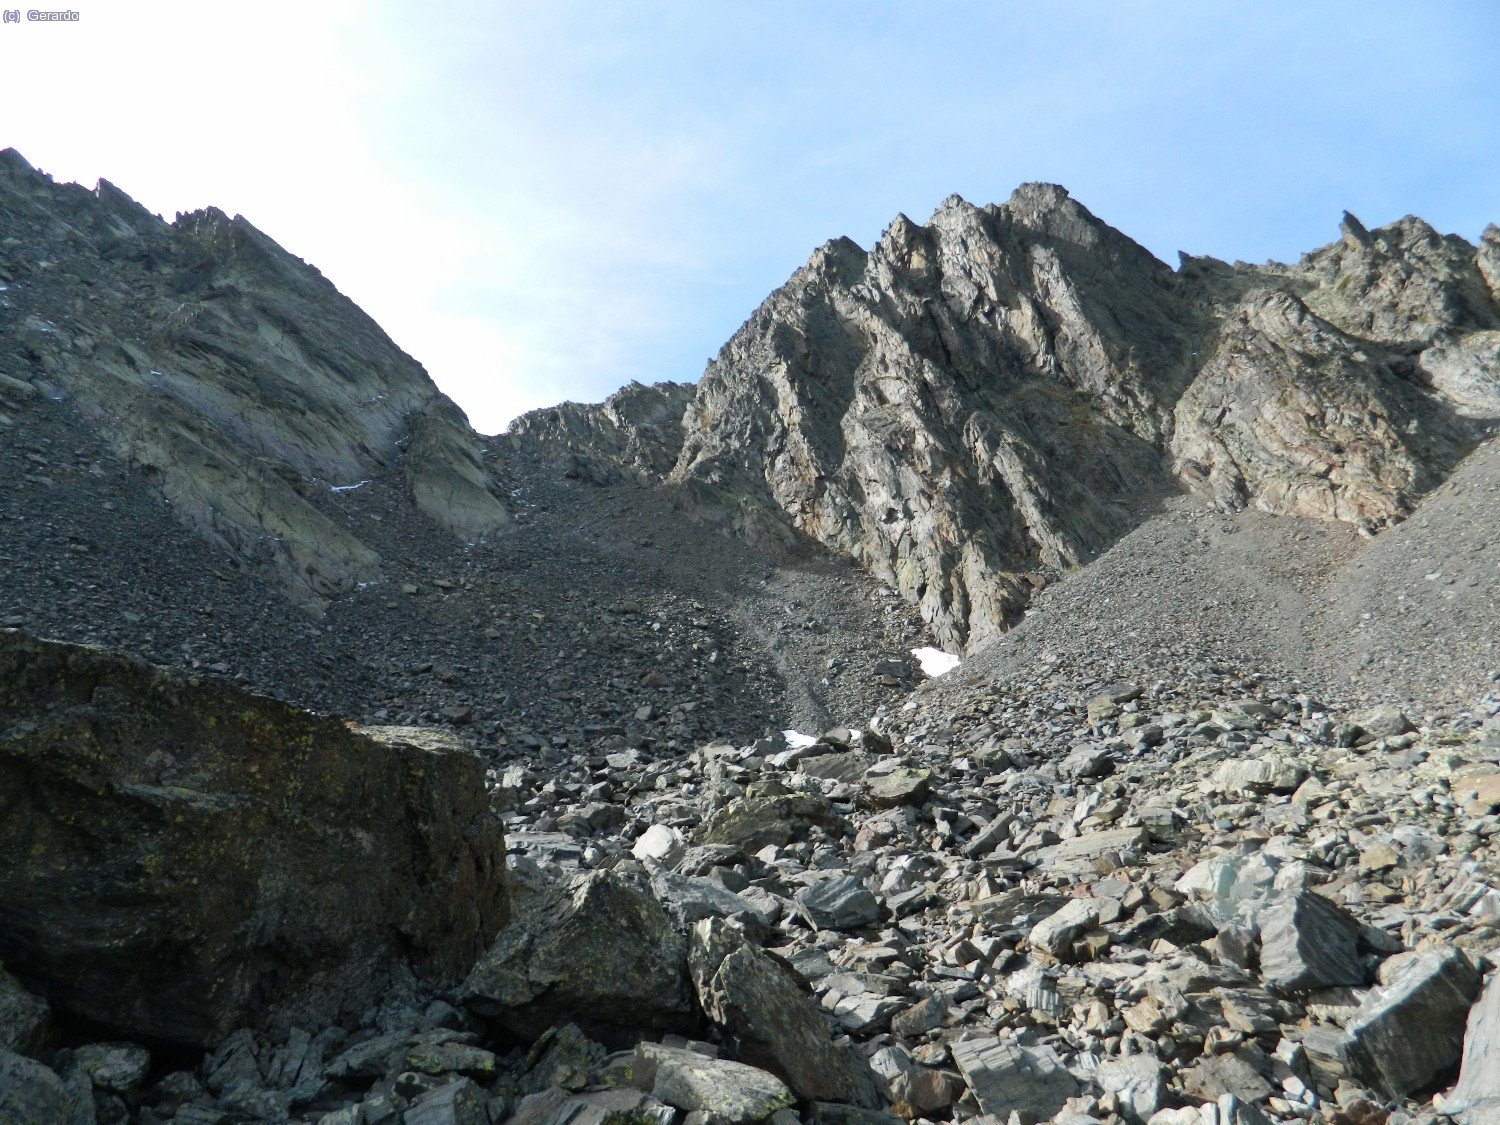 Vamos progresando poco a poco por este empinado muestrario de piedras... A la izquierda la loma somital del Comapedrosa, y a la derecha del colladito el Pic de Baiau.